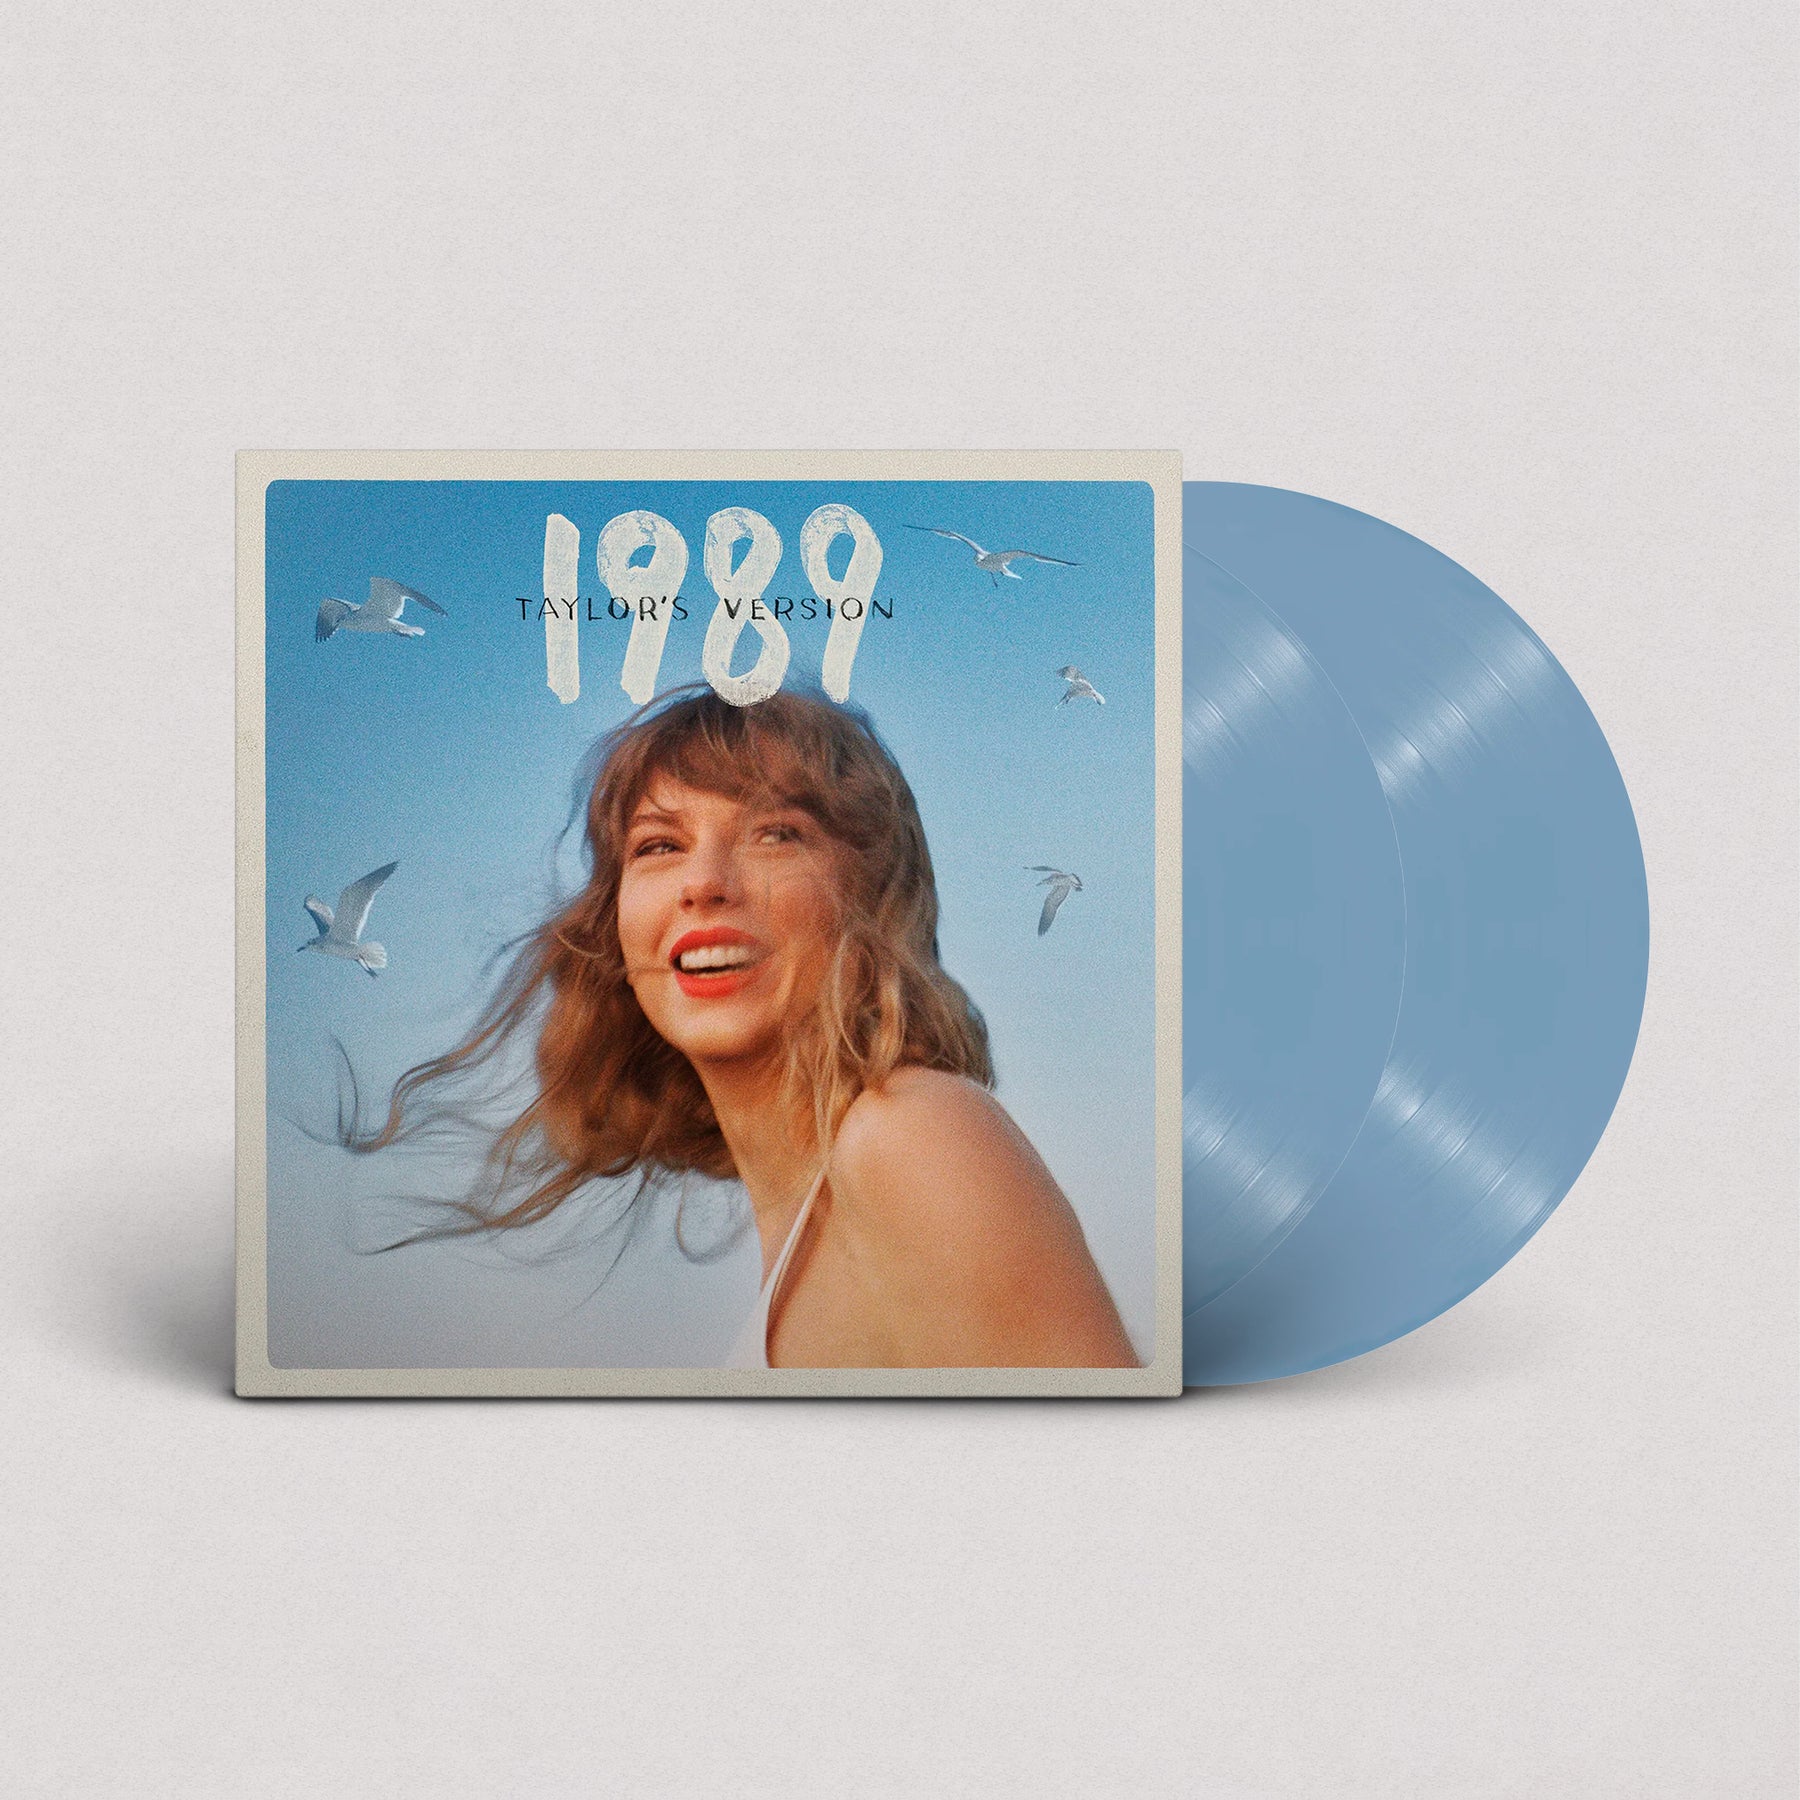 Taylor Swift - 1989 "Taylor's Version" (Vinilo, 2'LP)